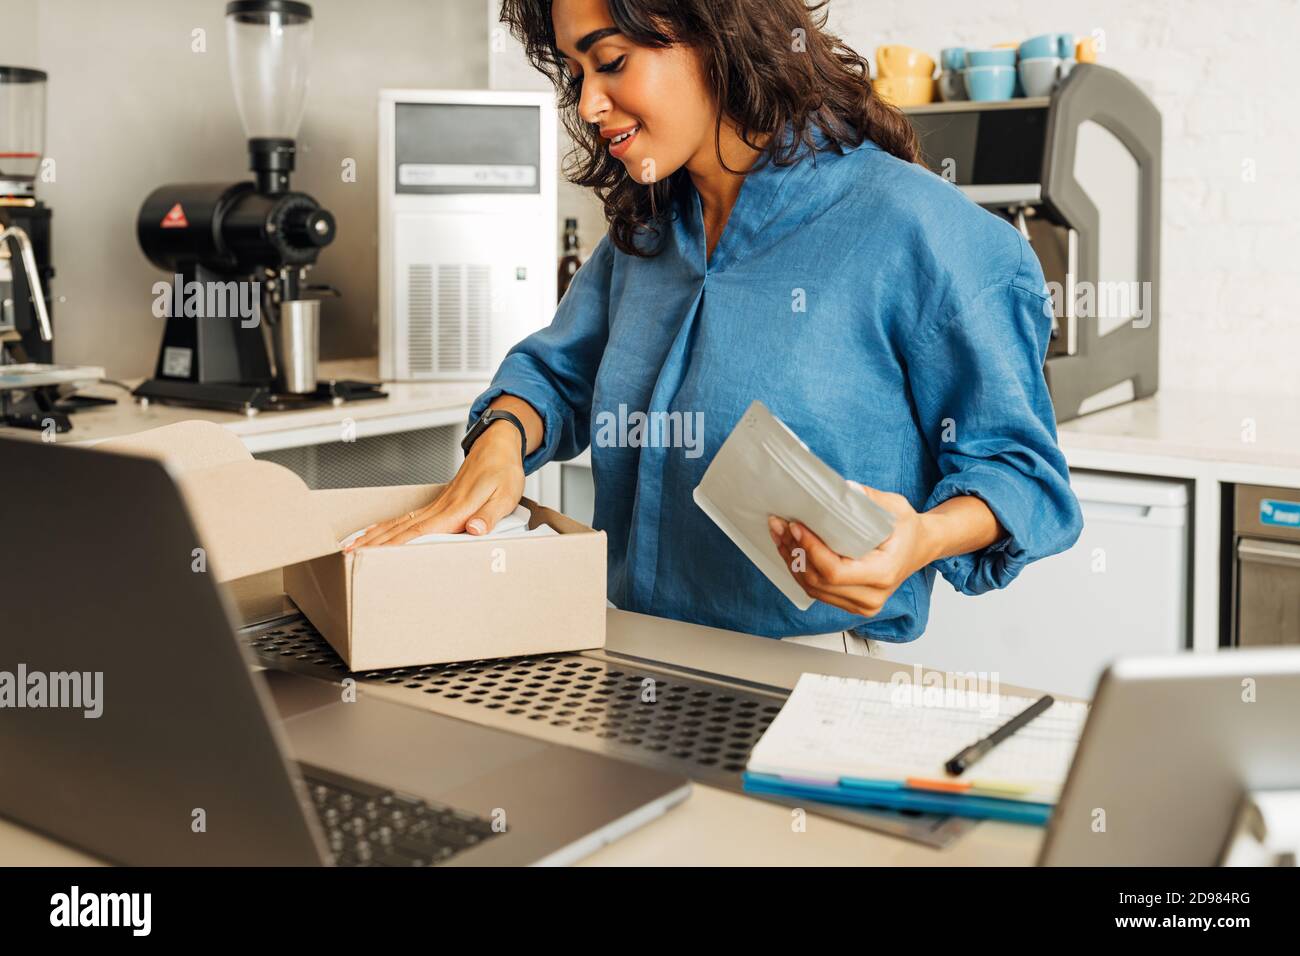 Der junge Unternehmer legt eine Packung Kaffee in einen Karton für den Versand. Coffee Shop Besitzer bereitet Online-Bestellung vor. Stockfoto